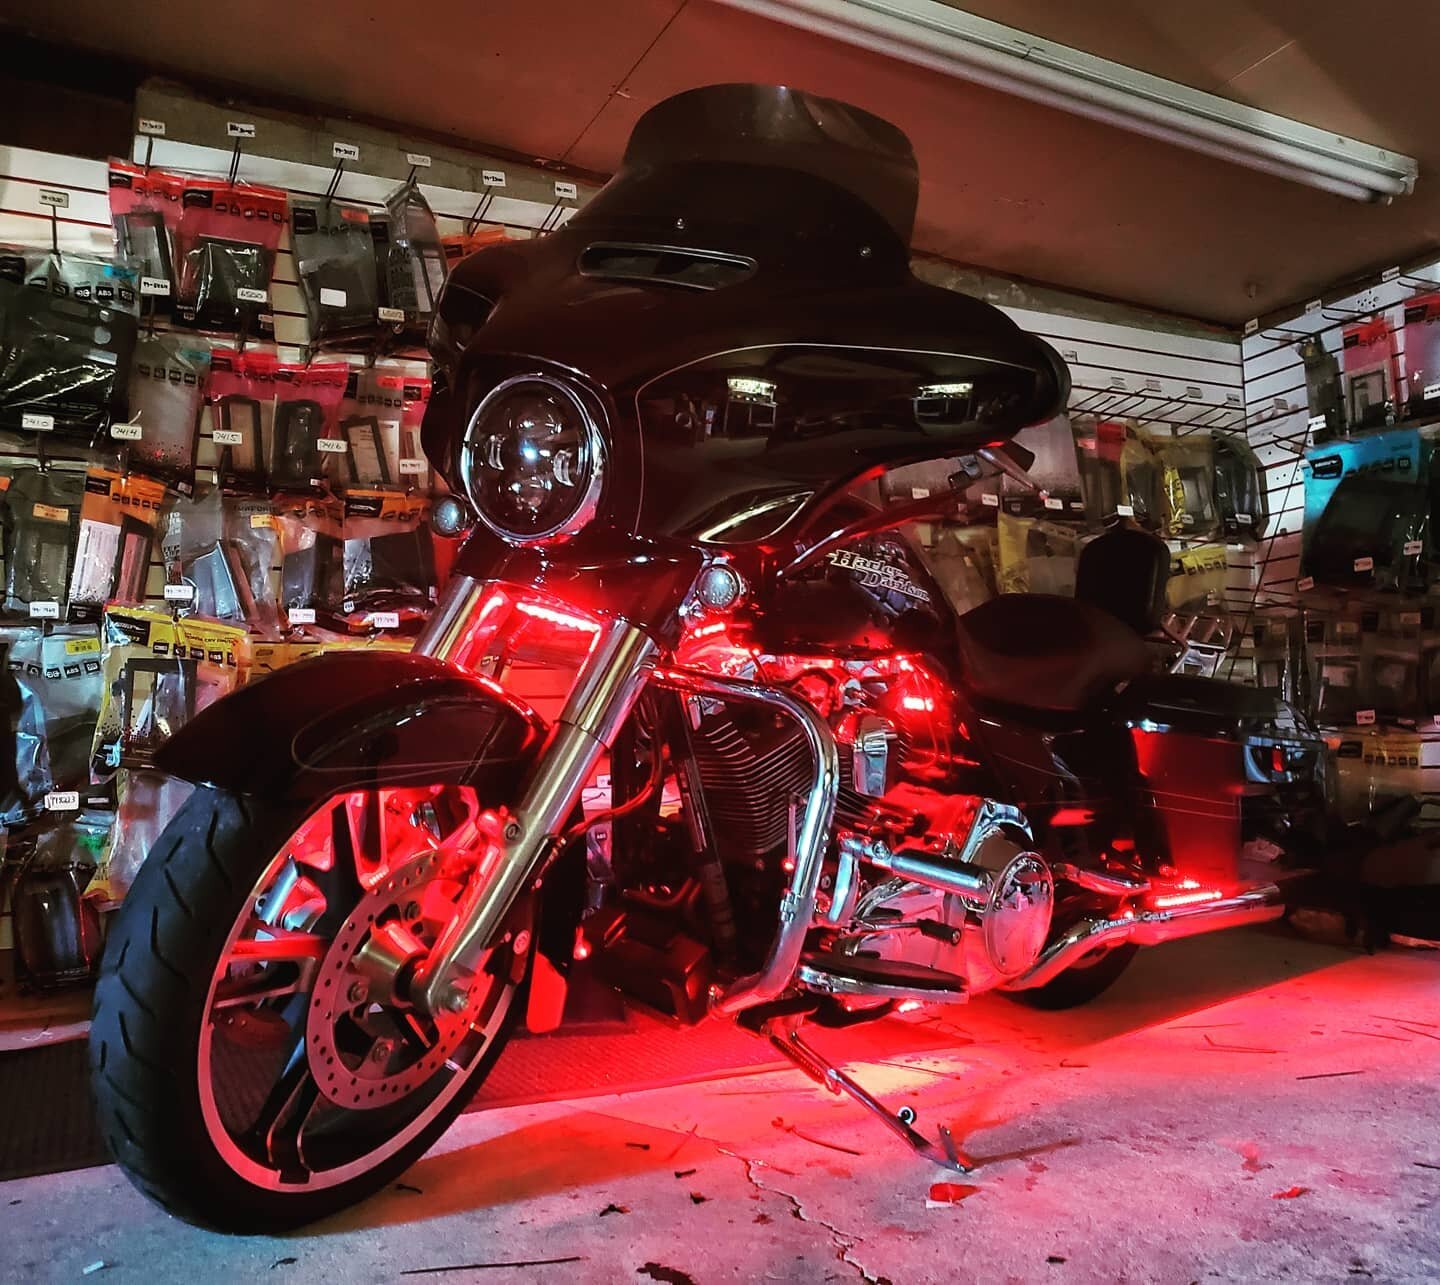 LED kit on this Harley Davidson 

#mecp #mobileelectronics #installer #12volt #ledlights #led #opt7lighting #happycustomer #harleydavidsonnation #davidson #harleydavidsonaddicts #harleysofinstagram #findyourfreedom #bikersofinstagram #livetoride #har